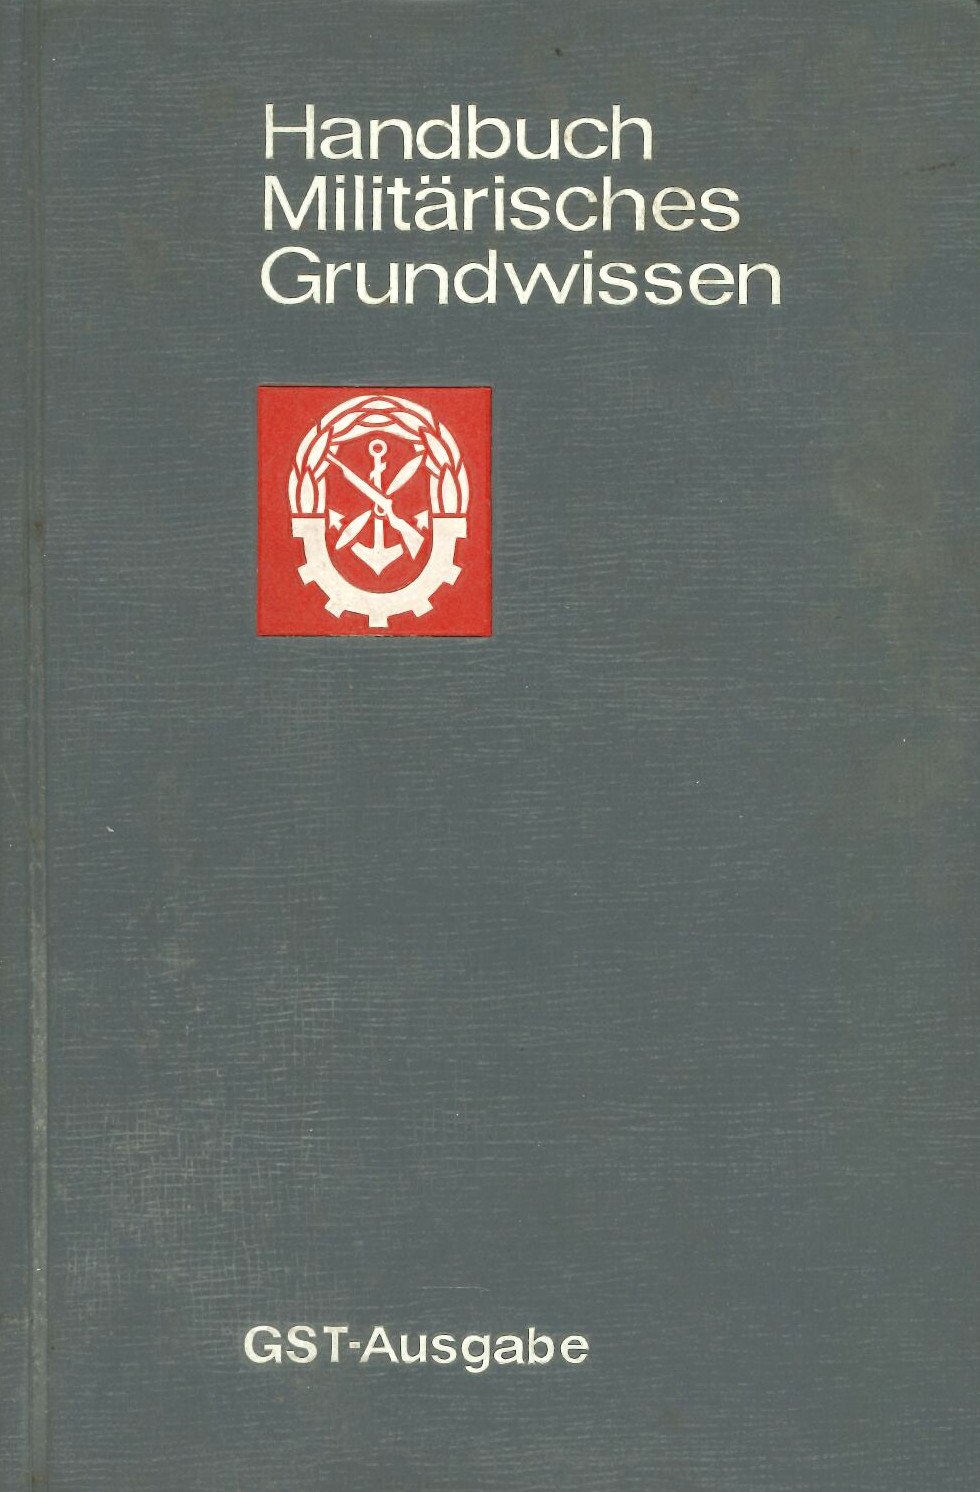 Handbuch Militärisches Grundwissen (Feuerwehrmuseum Grethen CC BY-NC-SA)